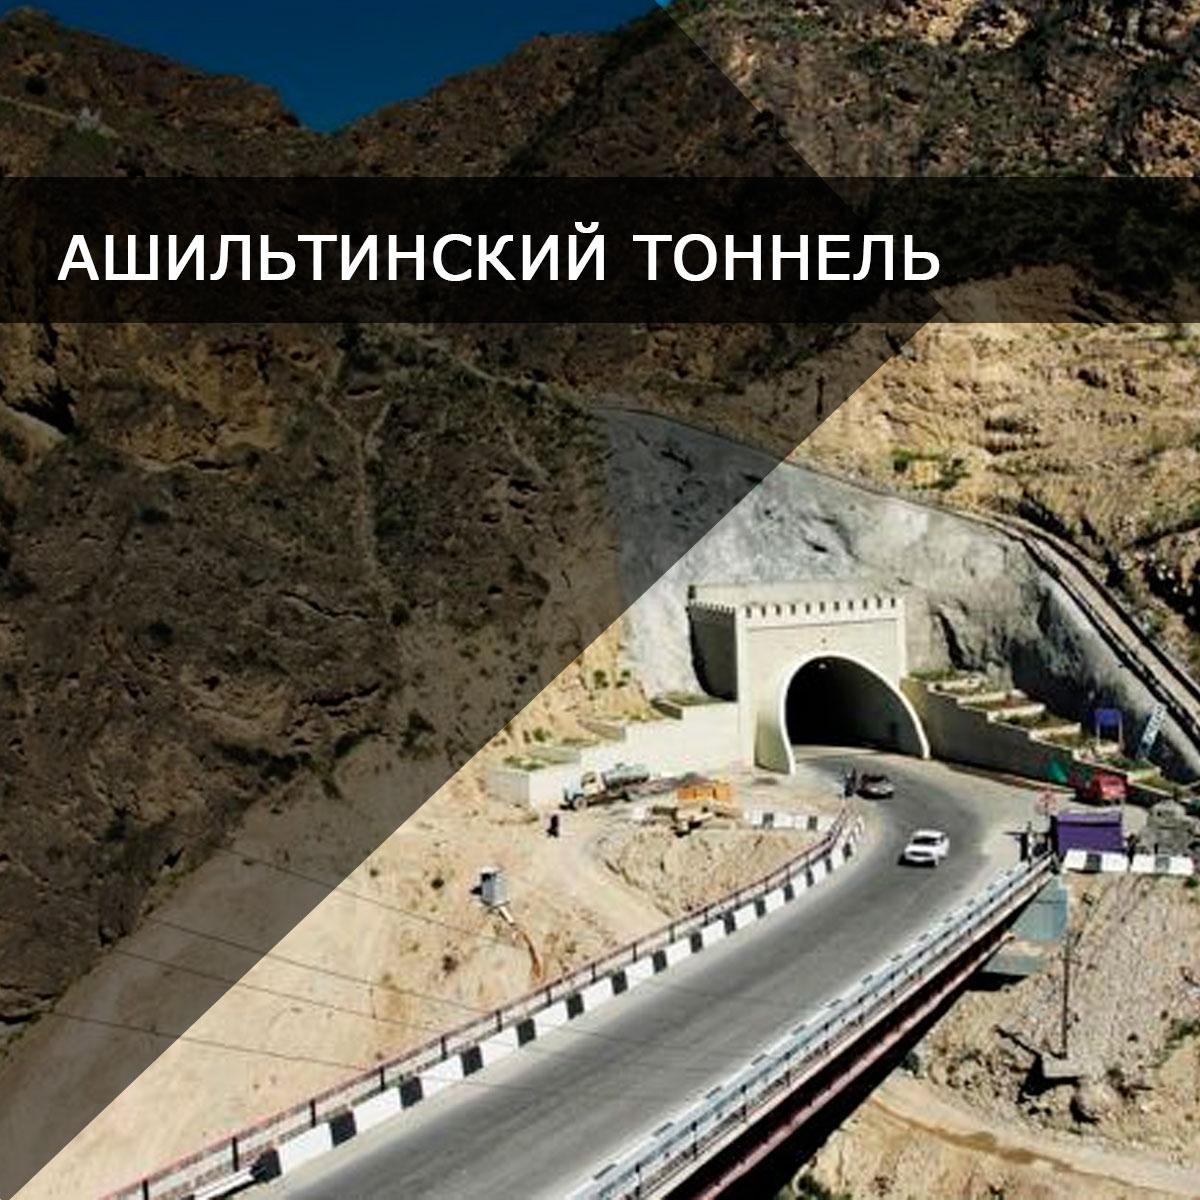 Ашильтинский тоннель